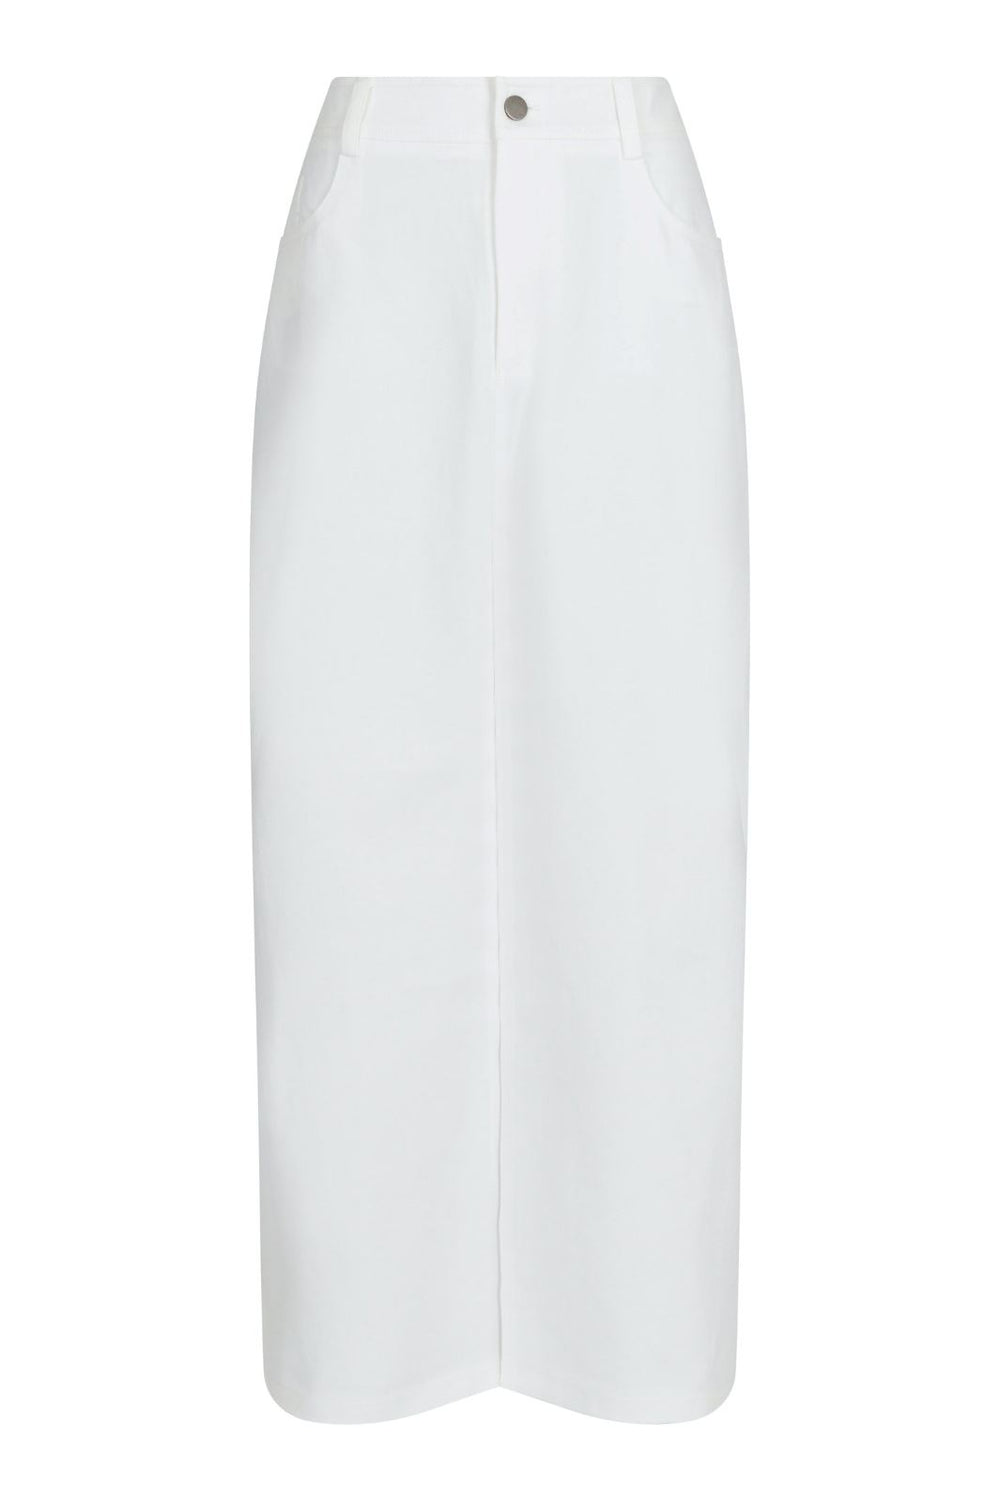 Neo Noir - Frankie Denim Skirt - Off White Nederdele 